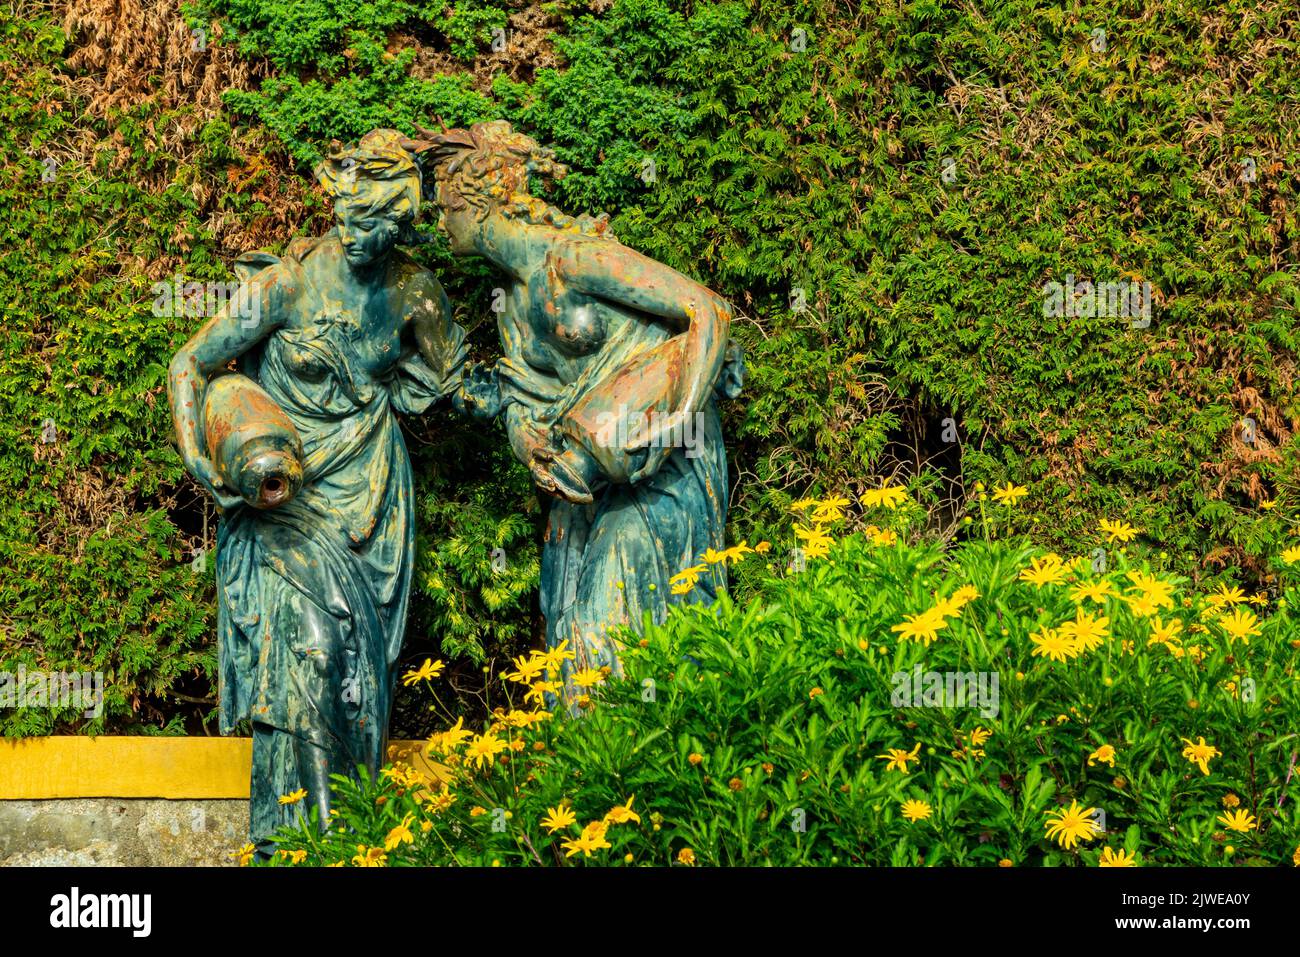 Statua nel Jardim do Palacio de Cristal un giardino pubblico progettato nel 19th ° secolo da Emile David nel centro di Porto, nel nord del Portogallo. Foto Stock